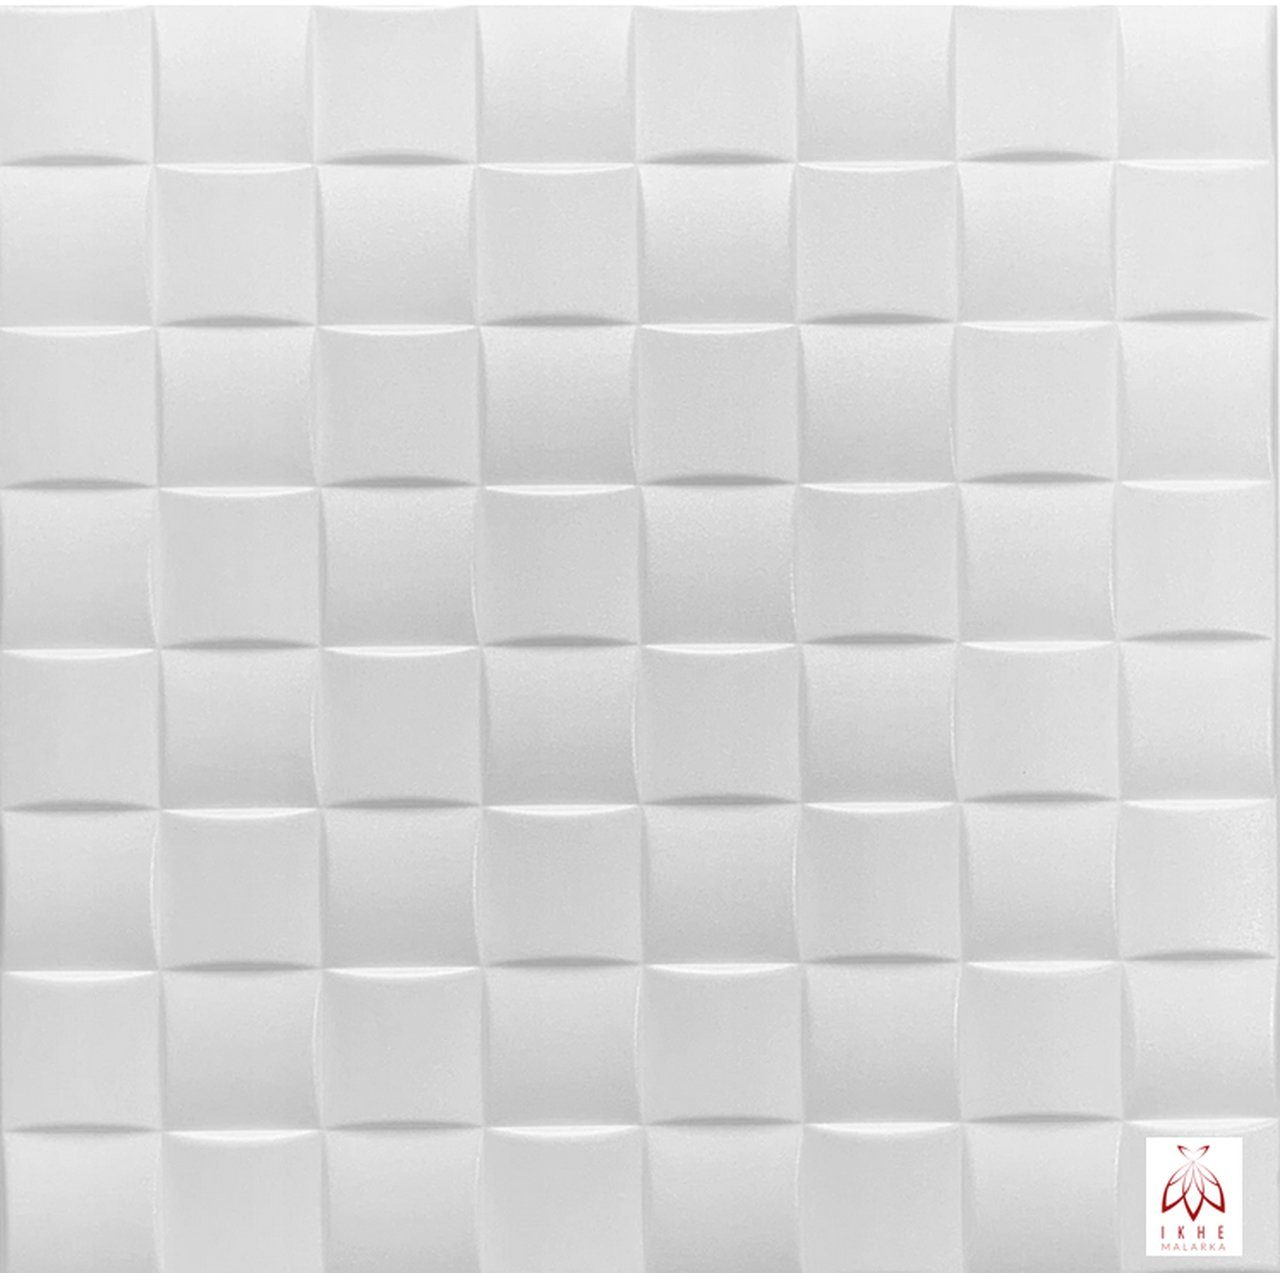 IKHEMalarka 3D Wandpaneel Polystyrol Deckenpaneele 2mm stark Dekoren, BxL: 50,00x50,00 cm, 0,25 qm, (Platten XPS, Polystyrol Paneele) 2m² = 8 Stück 0816 | Wandpaneele